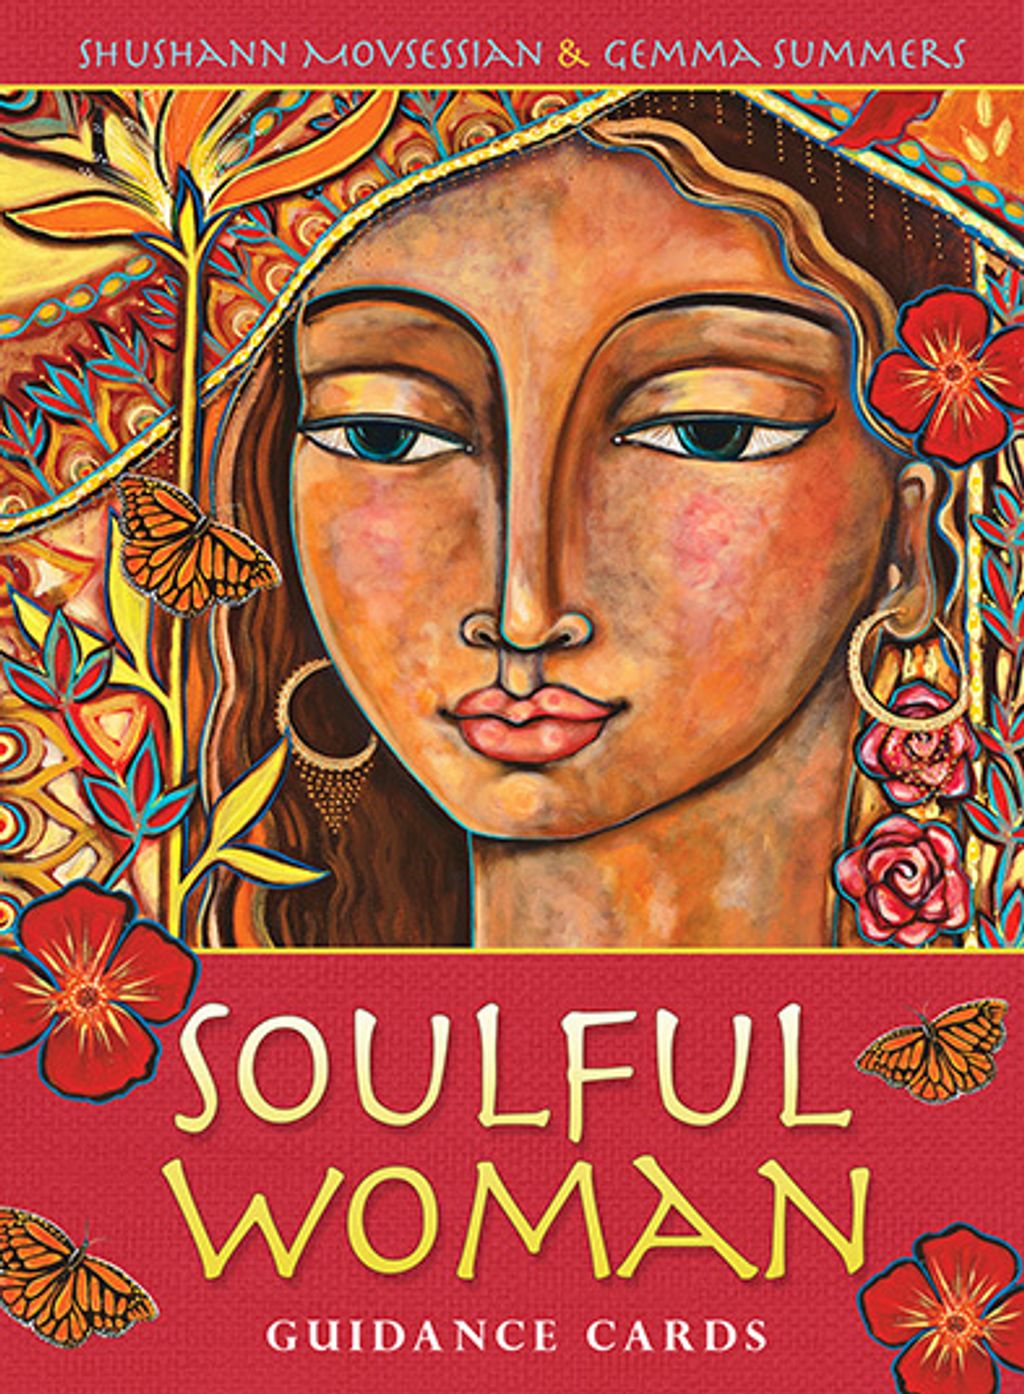 深情女性指引卡：Soulful Woman Guidance Cards.jpg